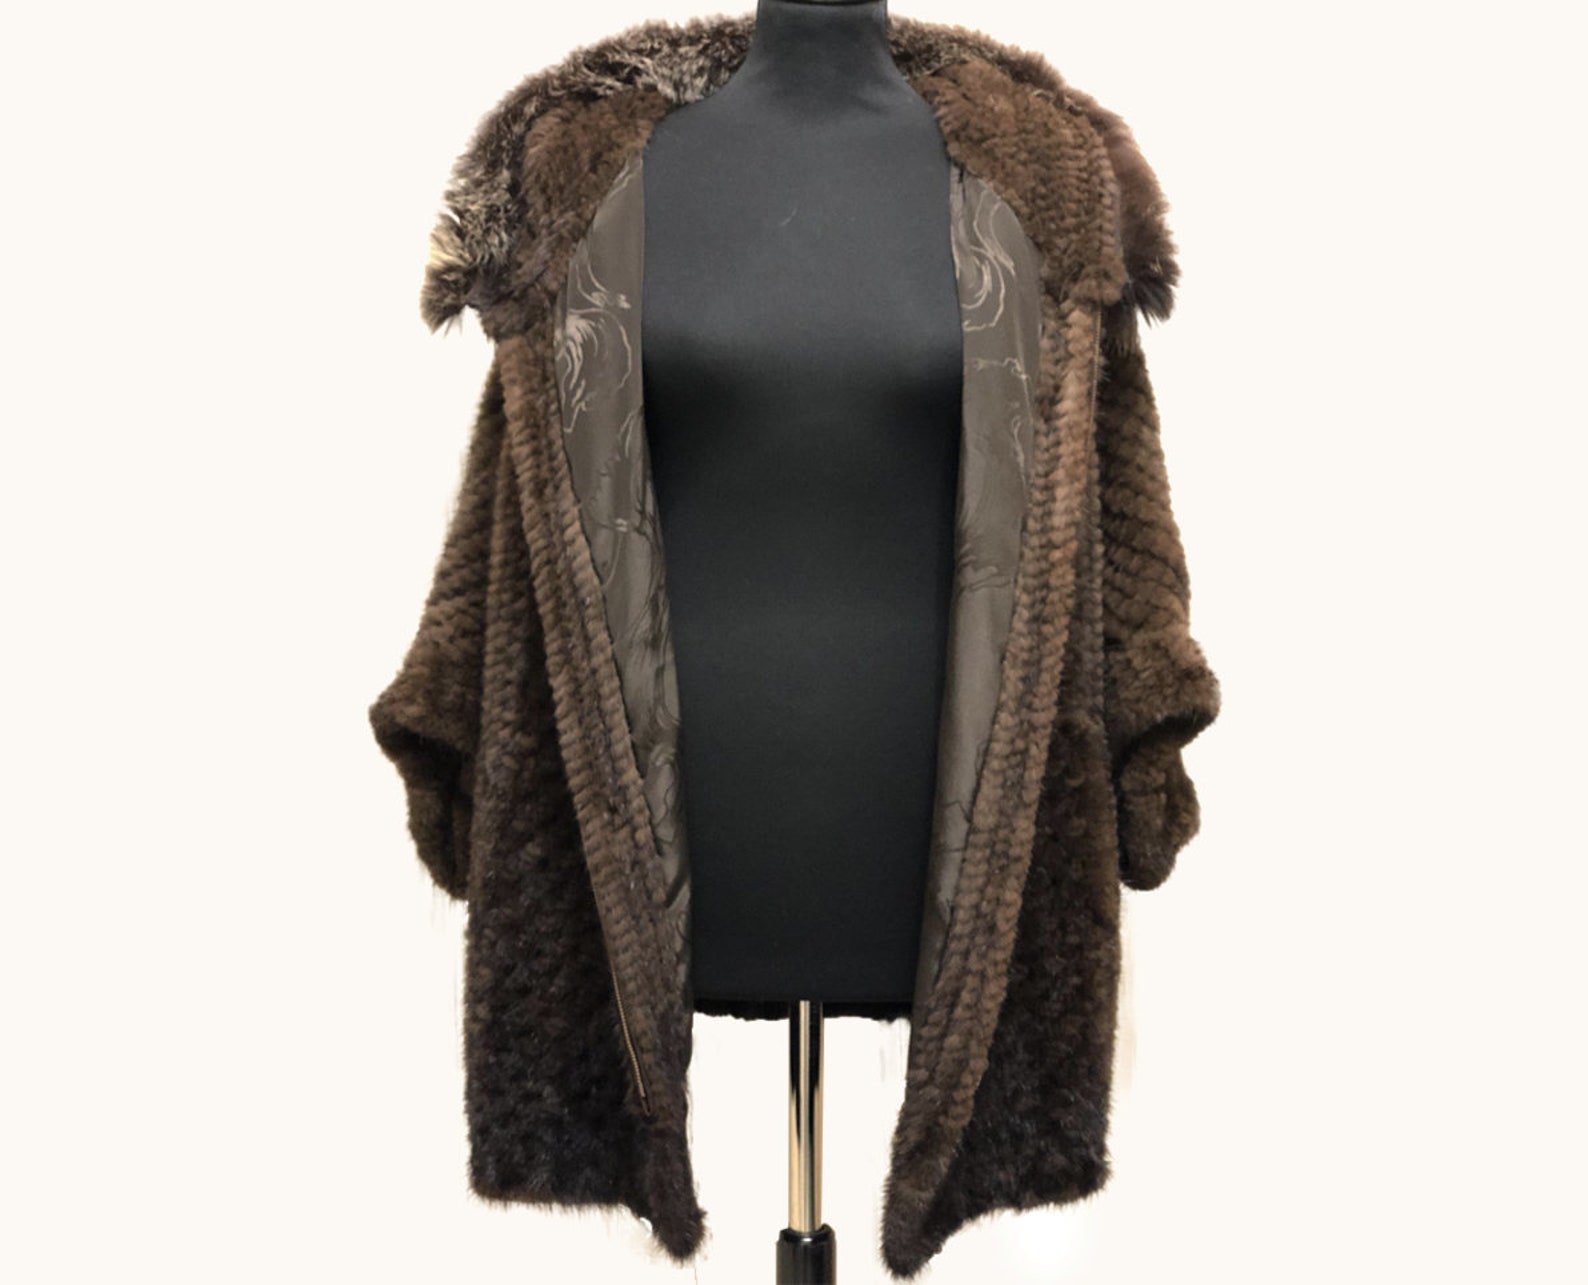 Plus size coat Fur coat Fur jacket Mink coat Jacket fur Coat | Etsy